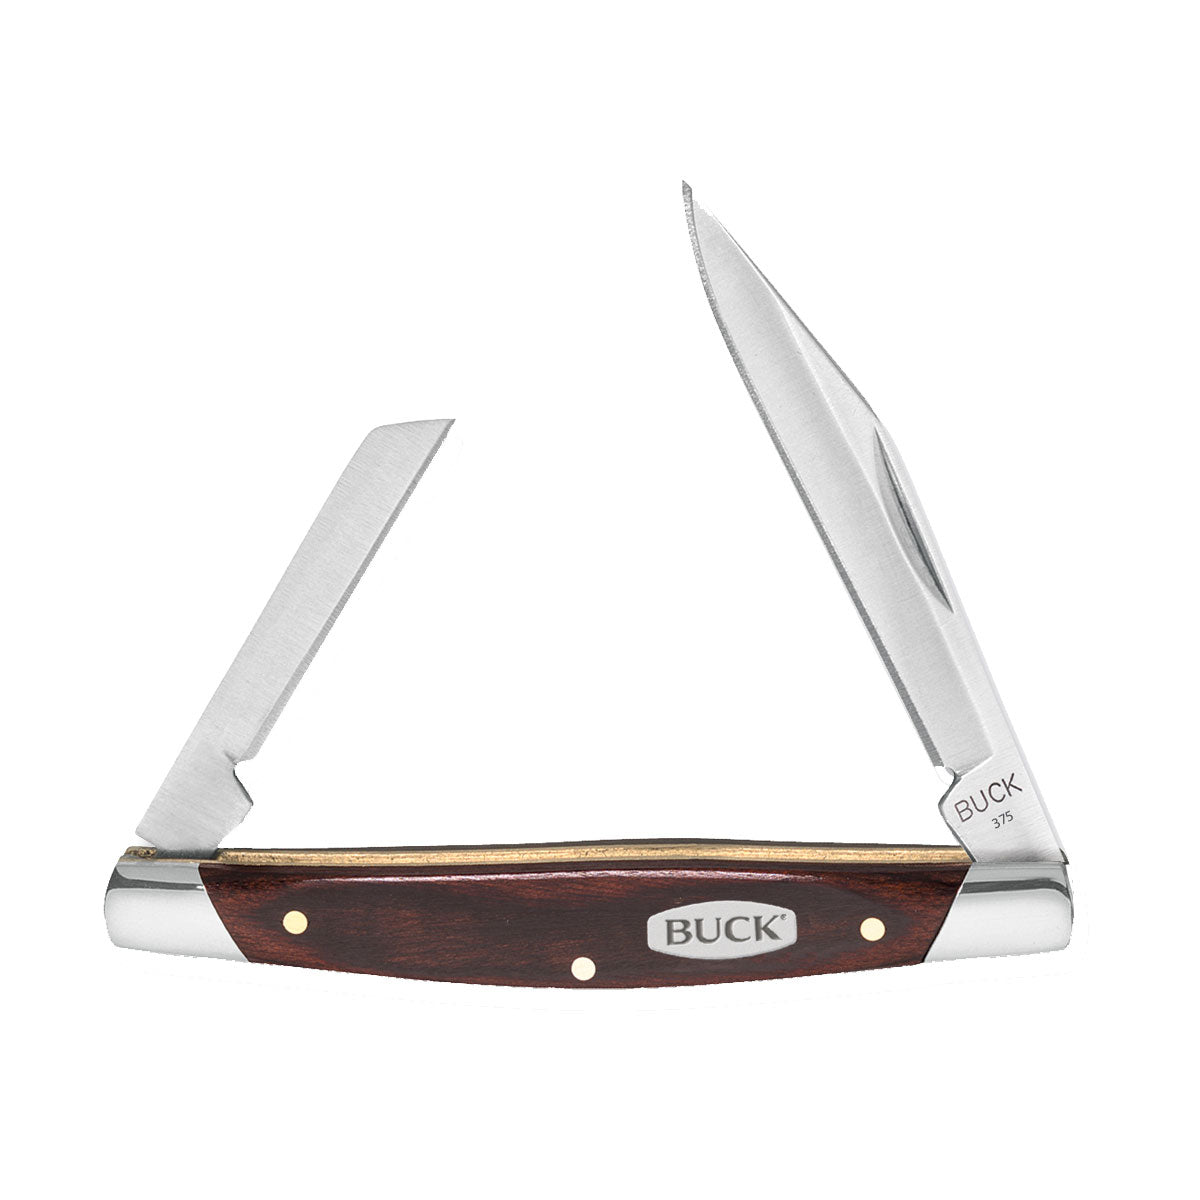 Buck Deuce Knife Stainless Steel Twin Blade Pocket knife 